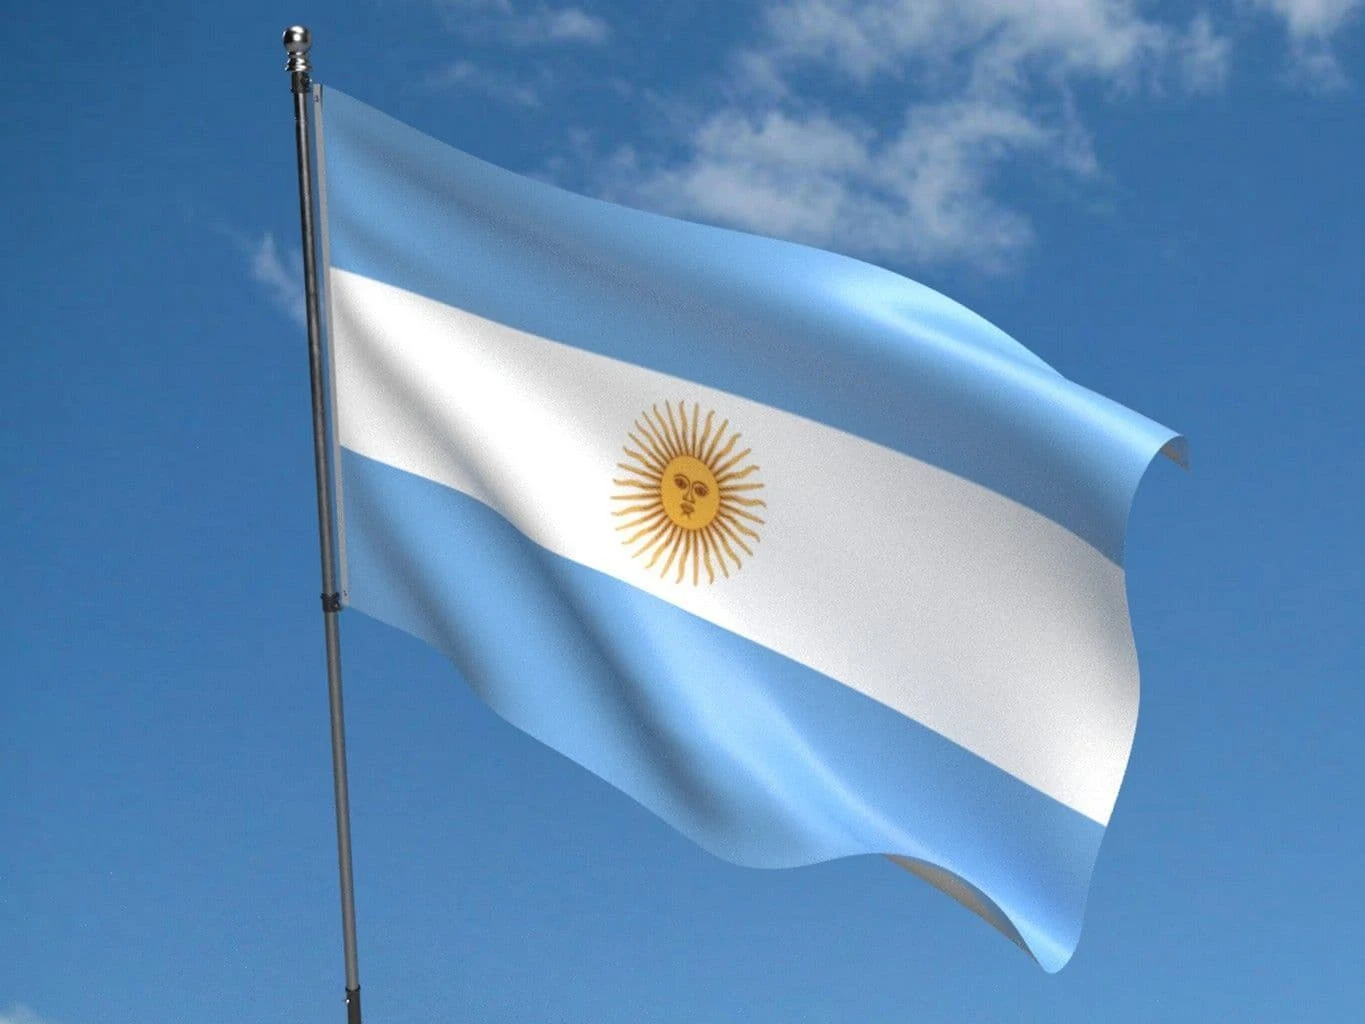 Argentina Flag Background - Argentina Flag Picture - Argentina Flag Background - Argentina Flag Picture - Argentina flag picture - NeotericIT.com